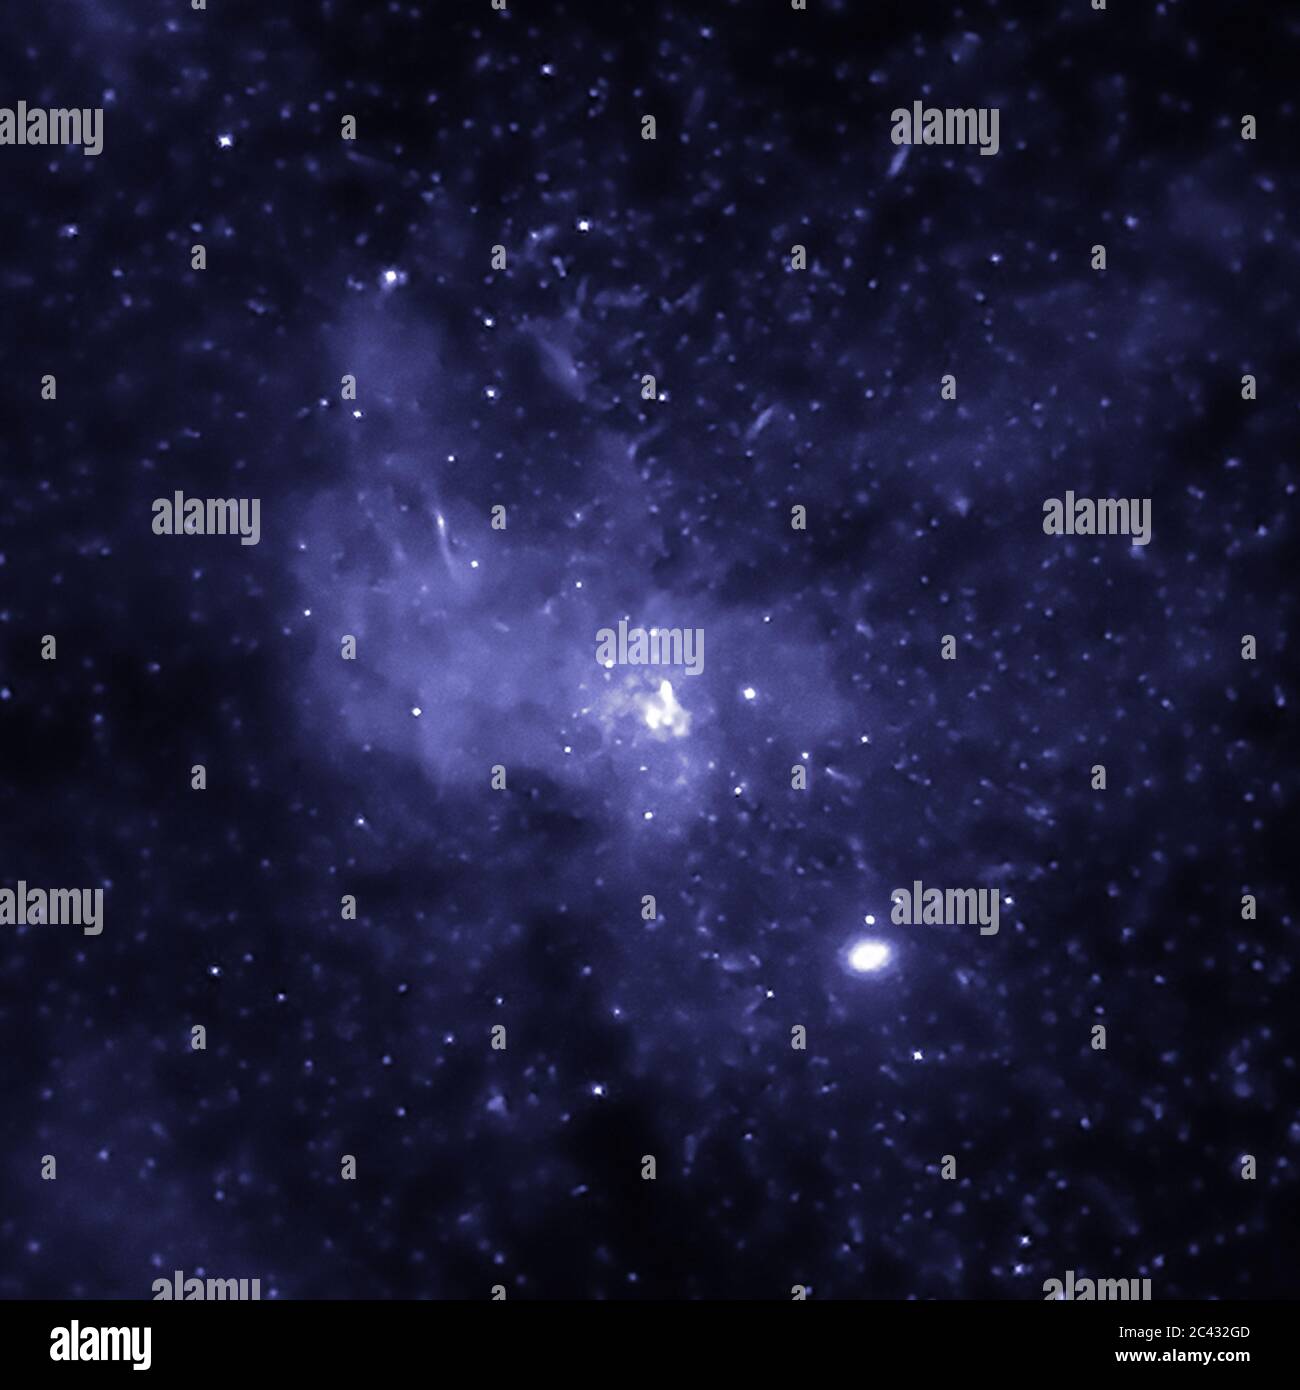 Washington, Usa. Juni 2020. Astronomen haben anhand von Daten des NASA-Röntgenobservatoriums Chandra Beweise für Tausende von Schwarzen Löchern in der Nähe des Zentrums unserer Milchstraße gefunden. Diese Kopfgeld-Kopfgeld besteht aus schwarzen Löchern mit stellarer Masse, Diese sind typischerweise zwischen dem fünf- bis 30-fachen der Masse unserer Sonne. Diese neu identifizierten Schwarzen Löcher wurden innerhalb von drei Lichtjahren, auf kosmischen Skalen relativ kurzer Entfernung, des supermassereichen Schwarzen Lochs im Zentrum unserer Galaxie, genannt Schütze A* (Sgr A*), gefunden. NASA/UPI Kredit: UPI/Alamy Live Nachrichten Stockfoto